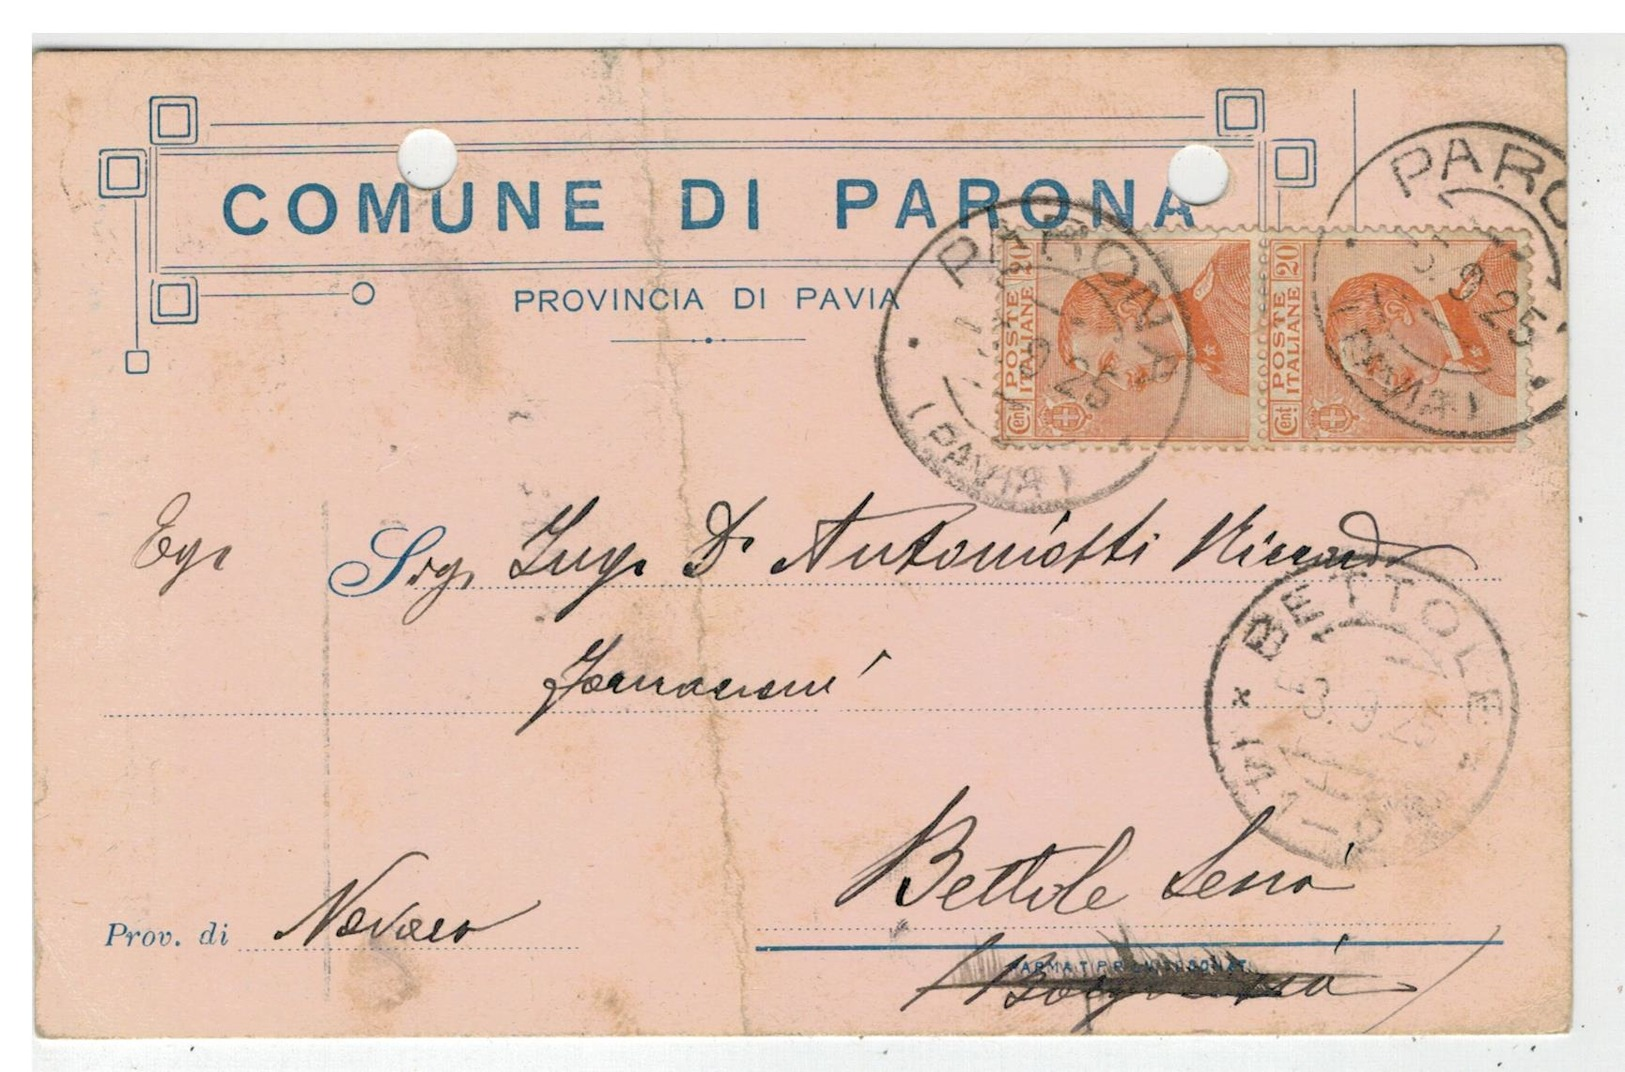 Cartolina Comune Di Parona Con Autografo Del Sindaco Signorelli - Lomellina - Pavia